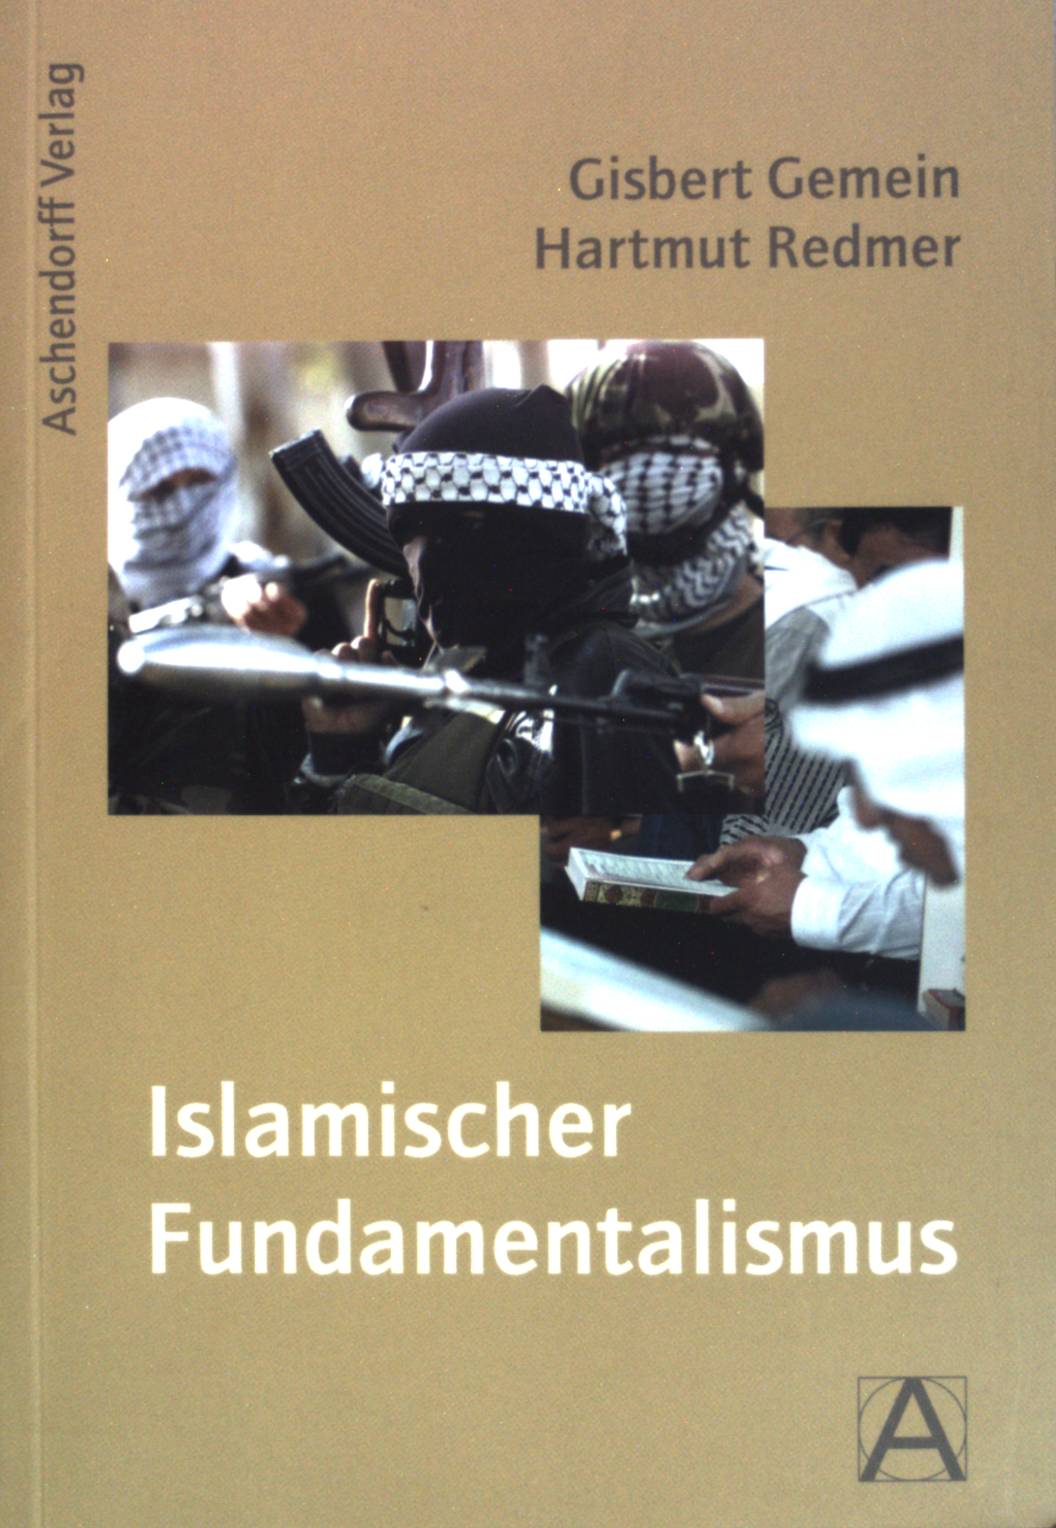 Islamischer Fundamentalismus. - Gemein, Gisbert Jörg und Hartmut Redmer